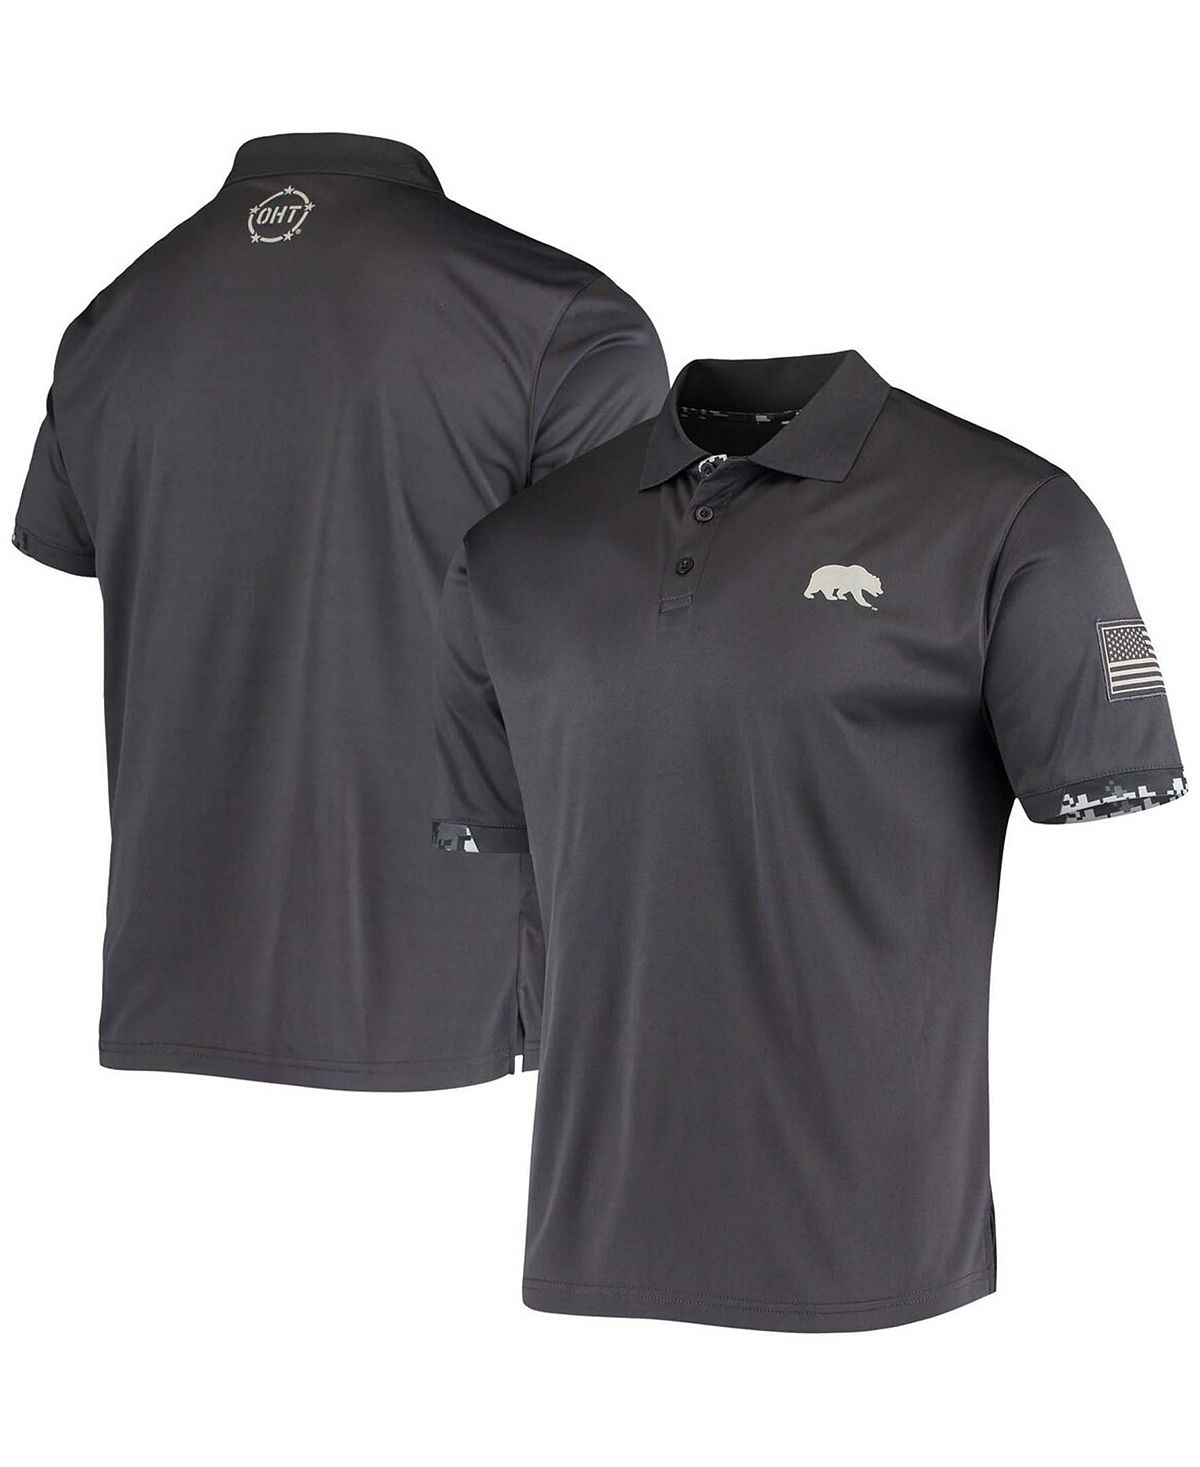 цена Мужская темно-серая футболка-поло cal bears oht с цифровым камуфляжным принтом в стиле милитари Colosseum, мульти